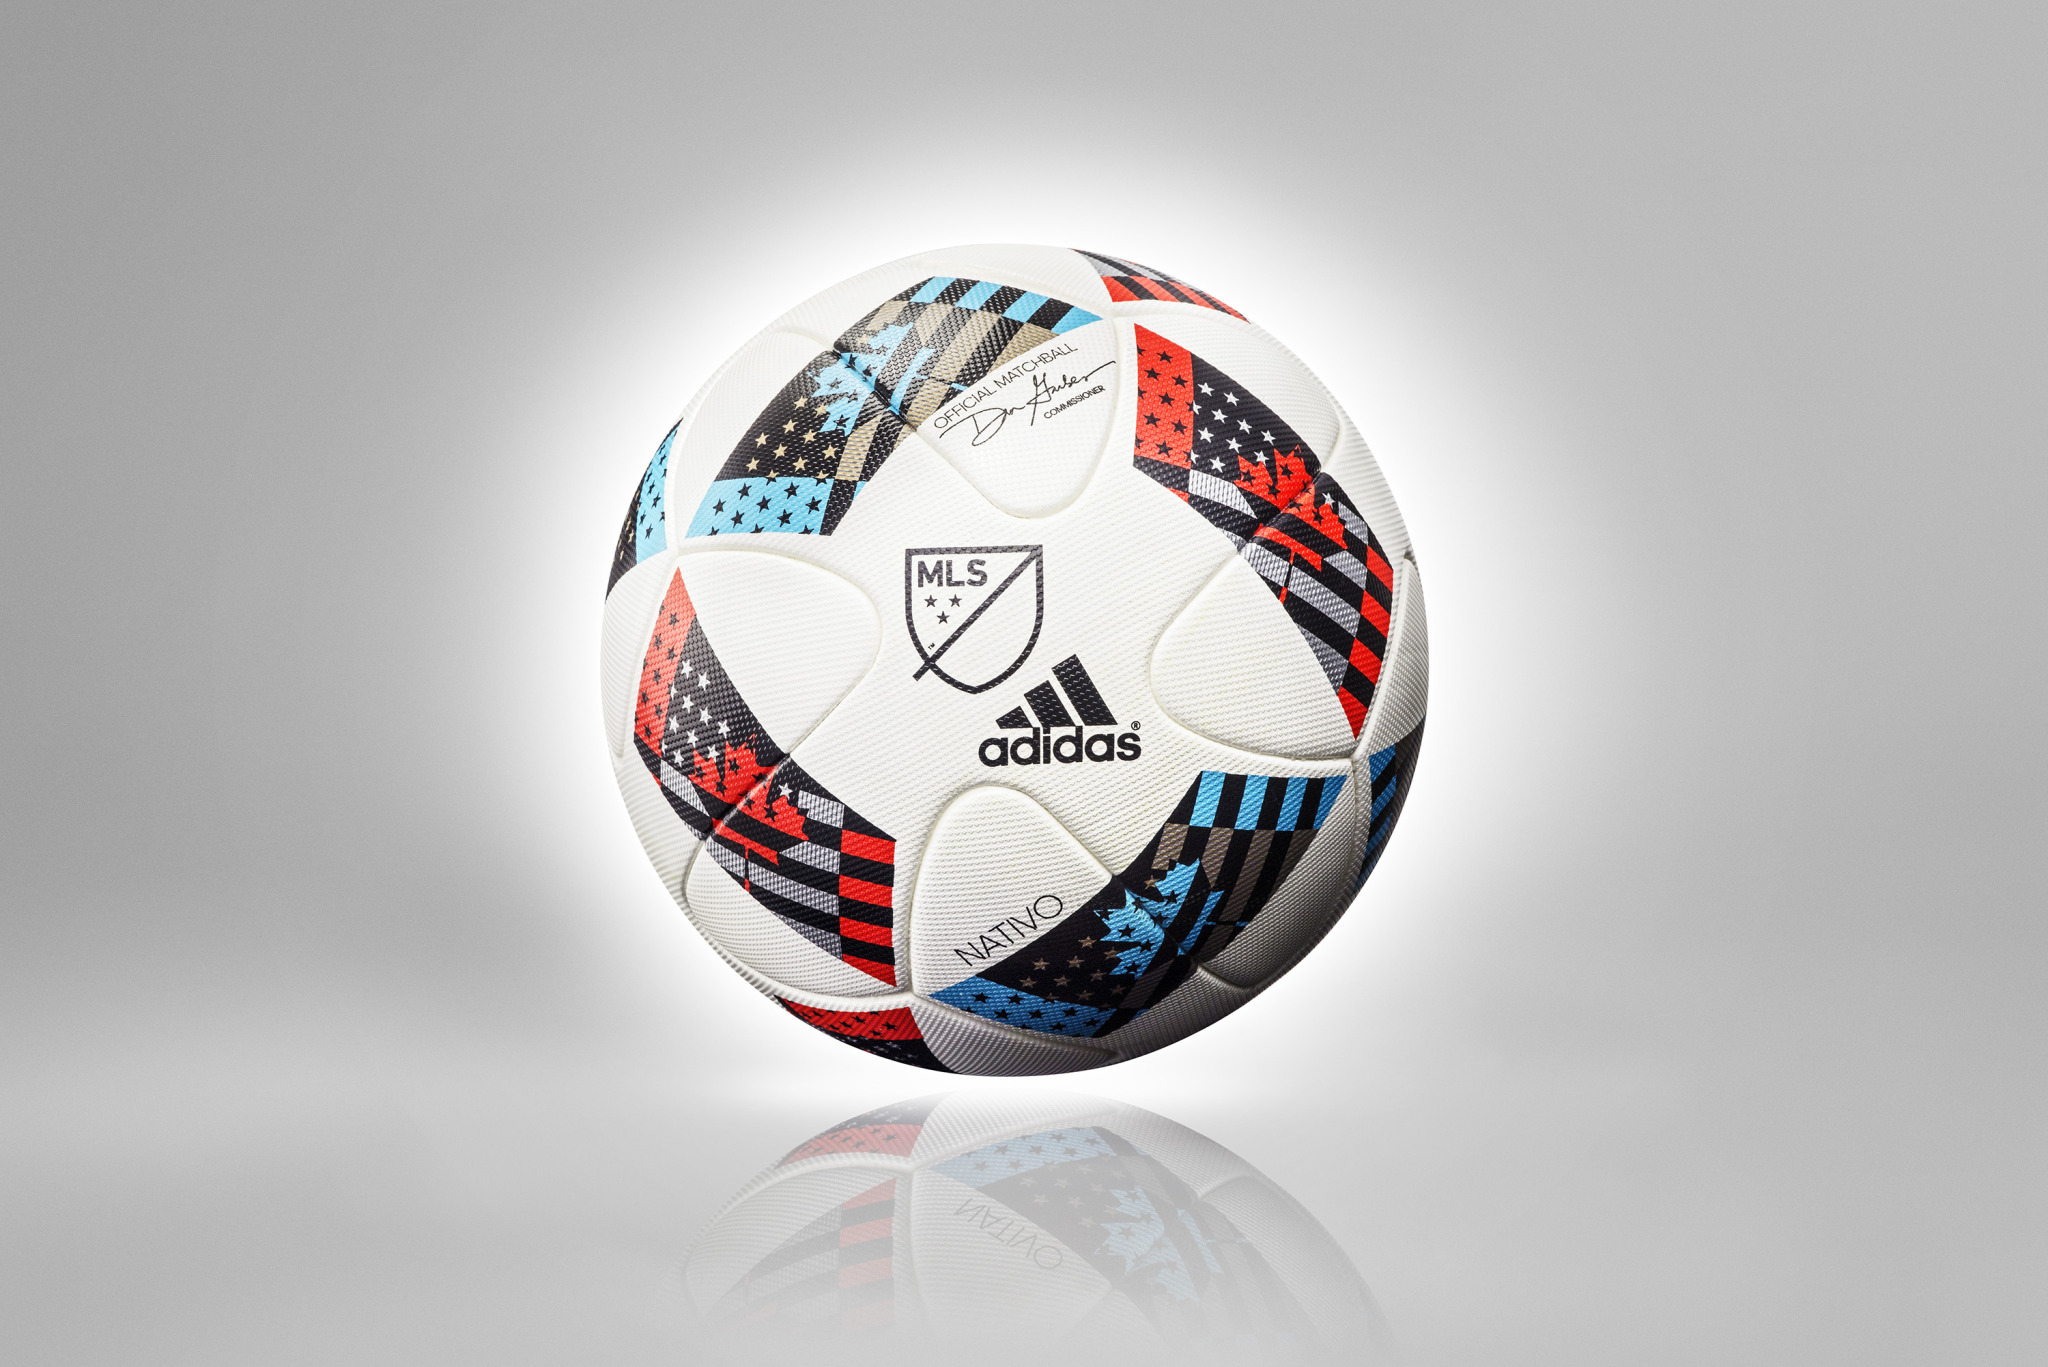 Ballon adidas MLS 2016 NATIVO ball